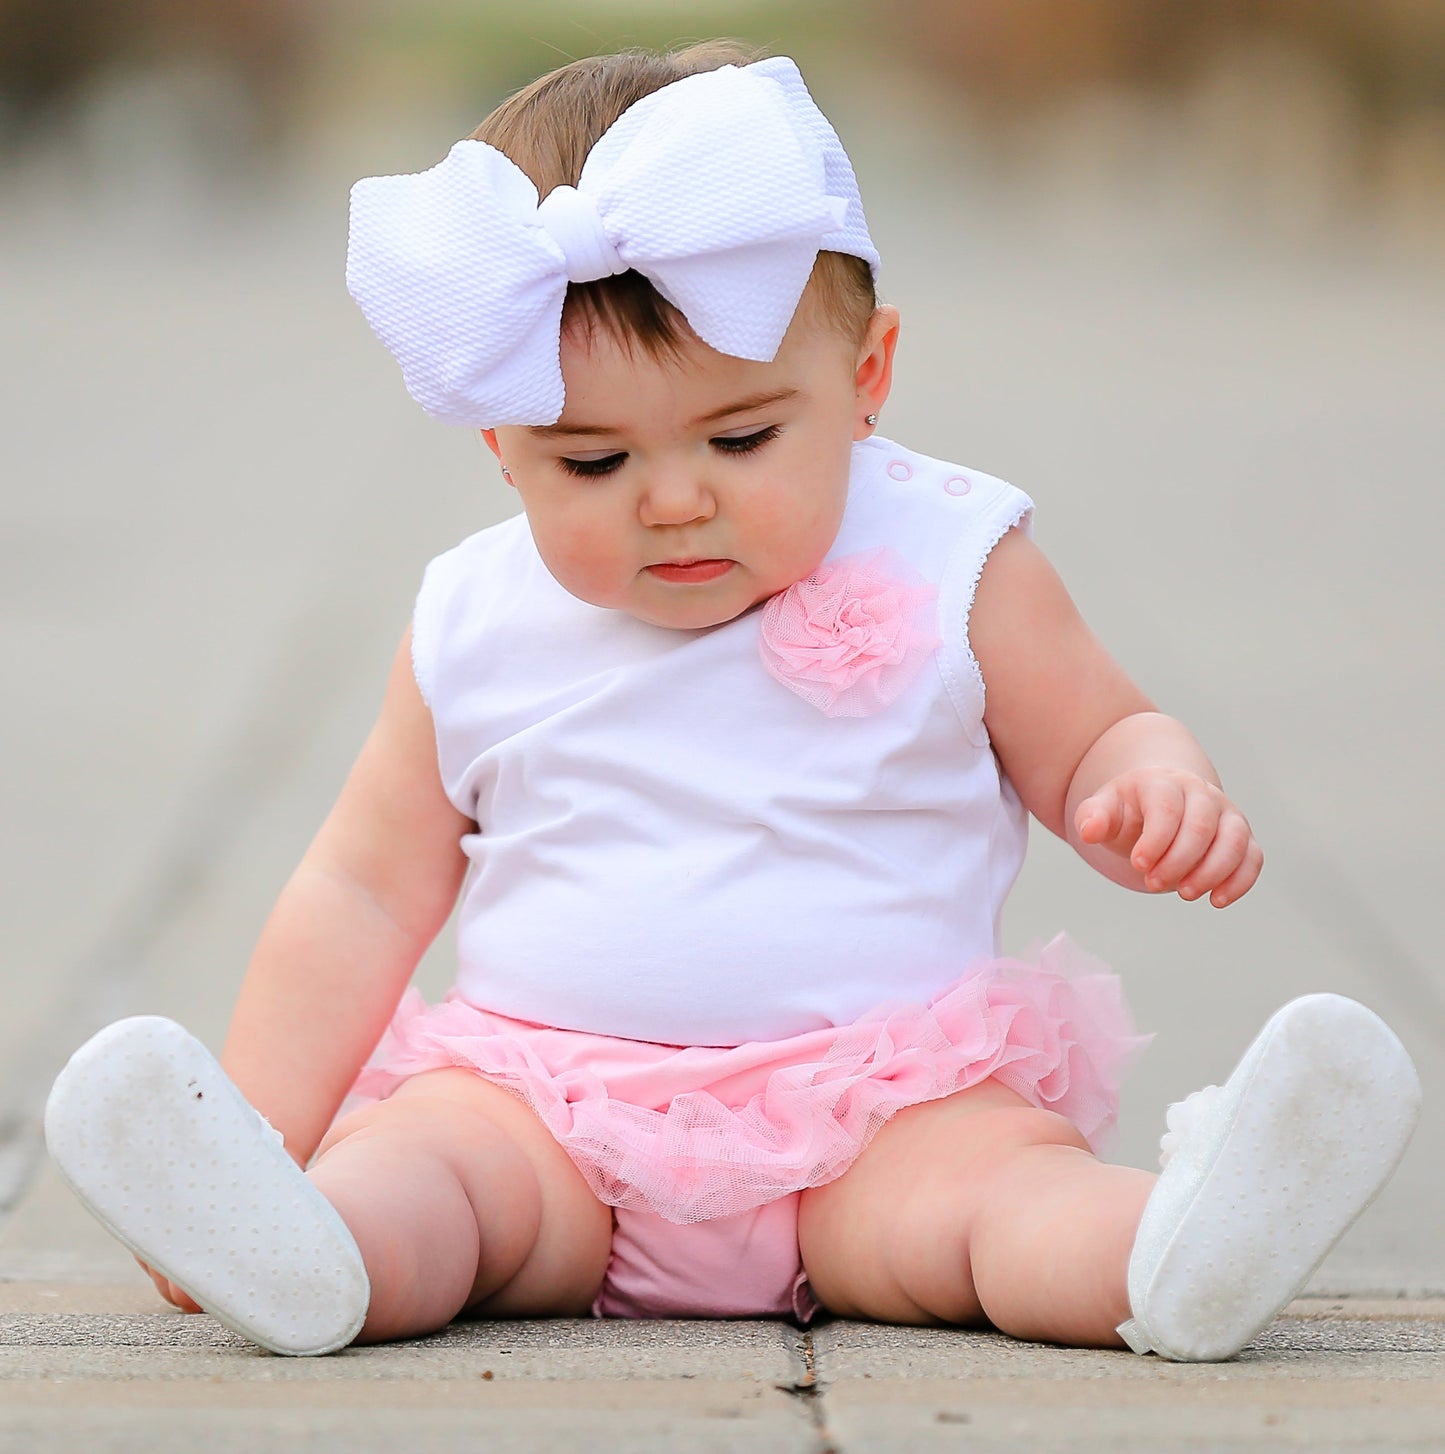 AnnLoren Girls Pink Tutu Ruffled Butt Bloomer Baby/Toddler Diaper Cover